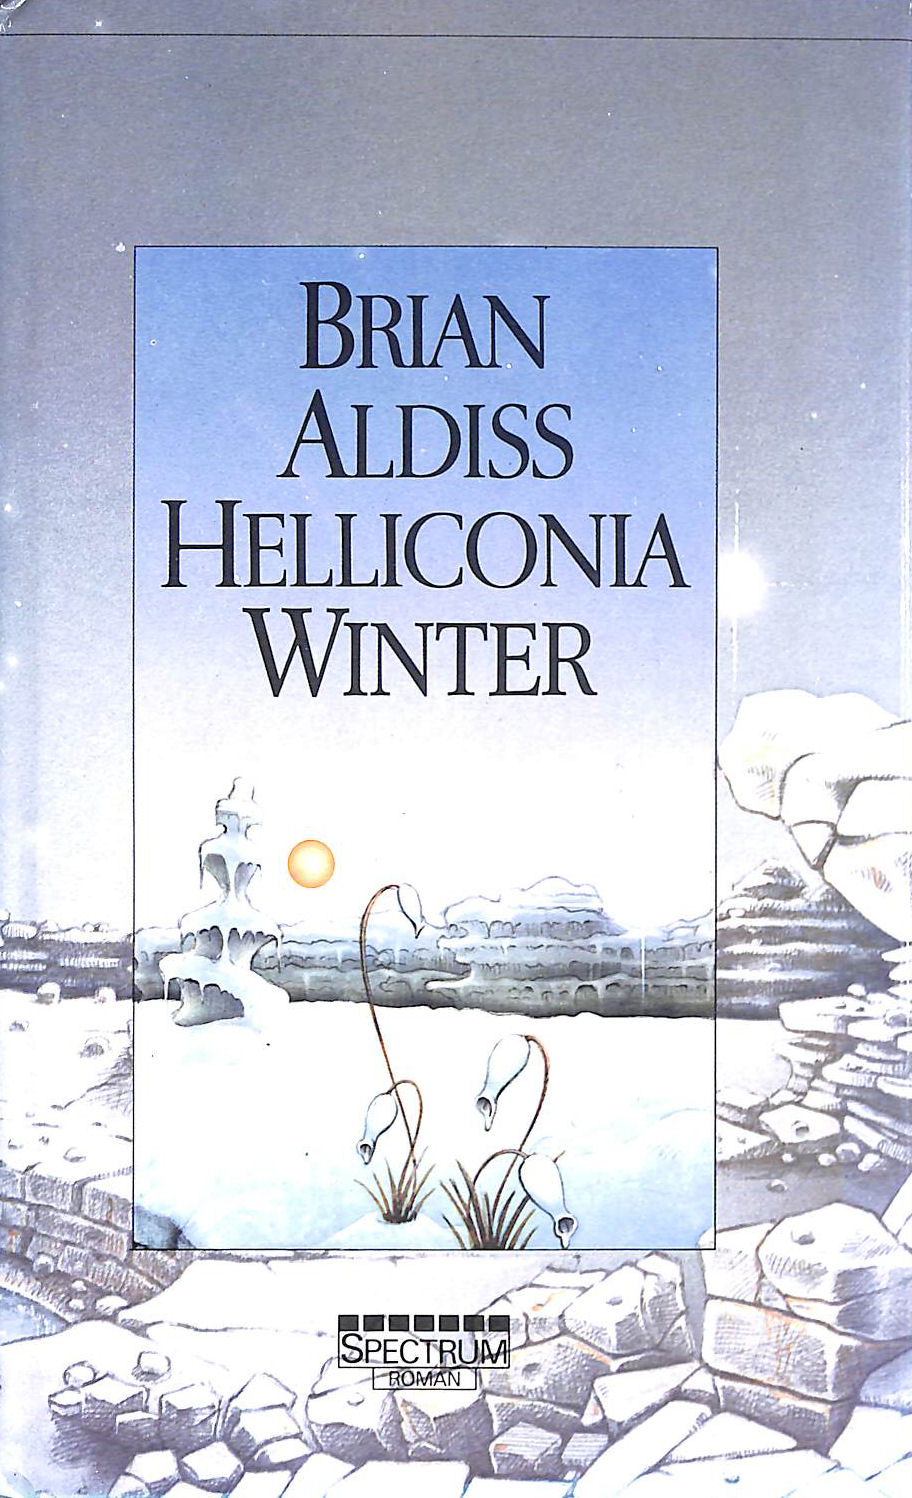 ALDISS, BRIAN W. - Helliconia Winter